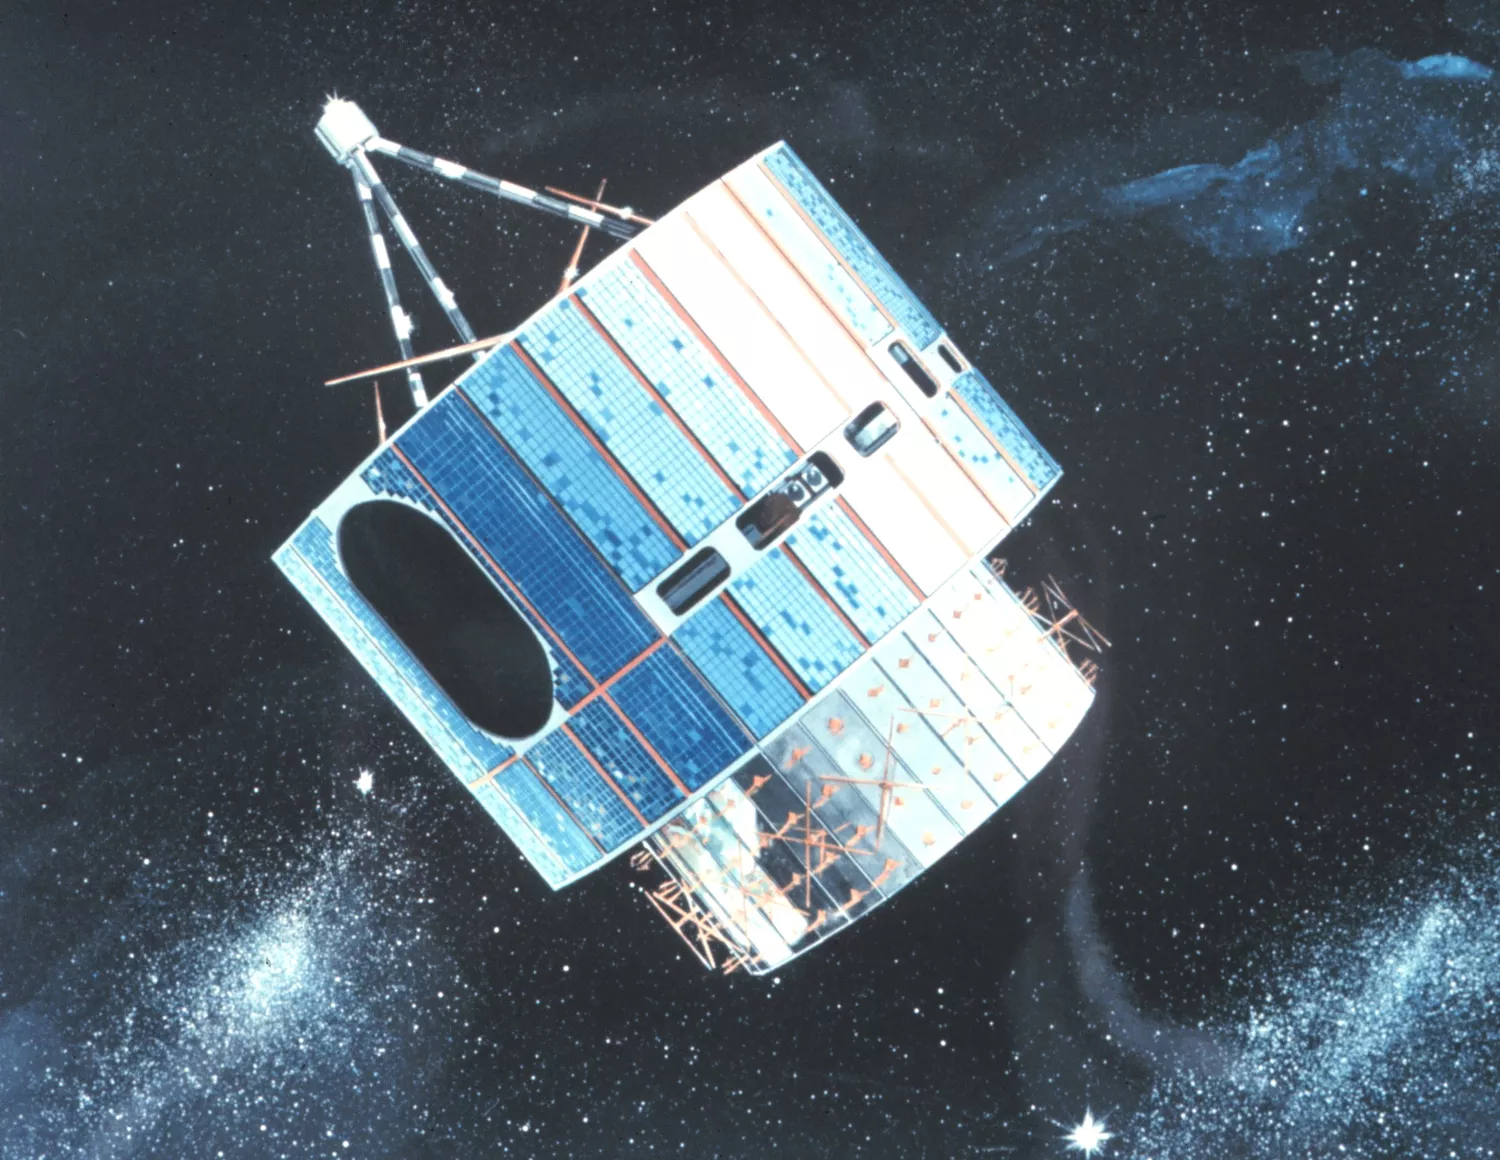 Artist rendering of the GOES-1 Satellite